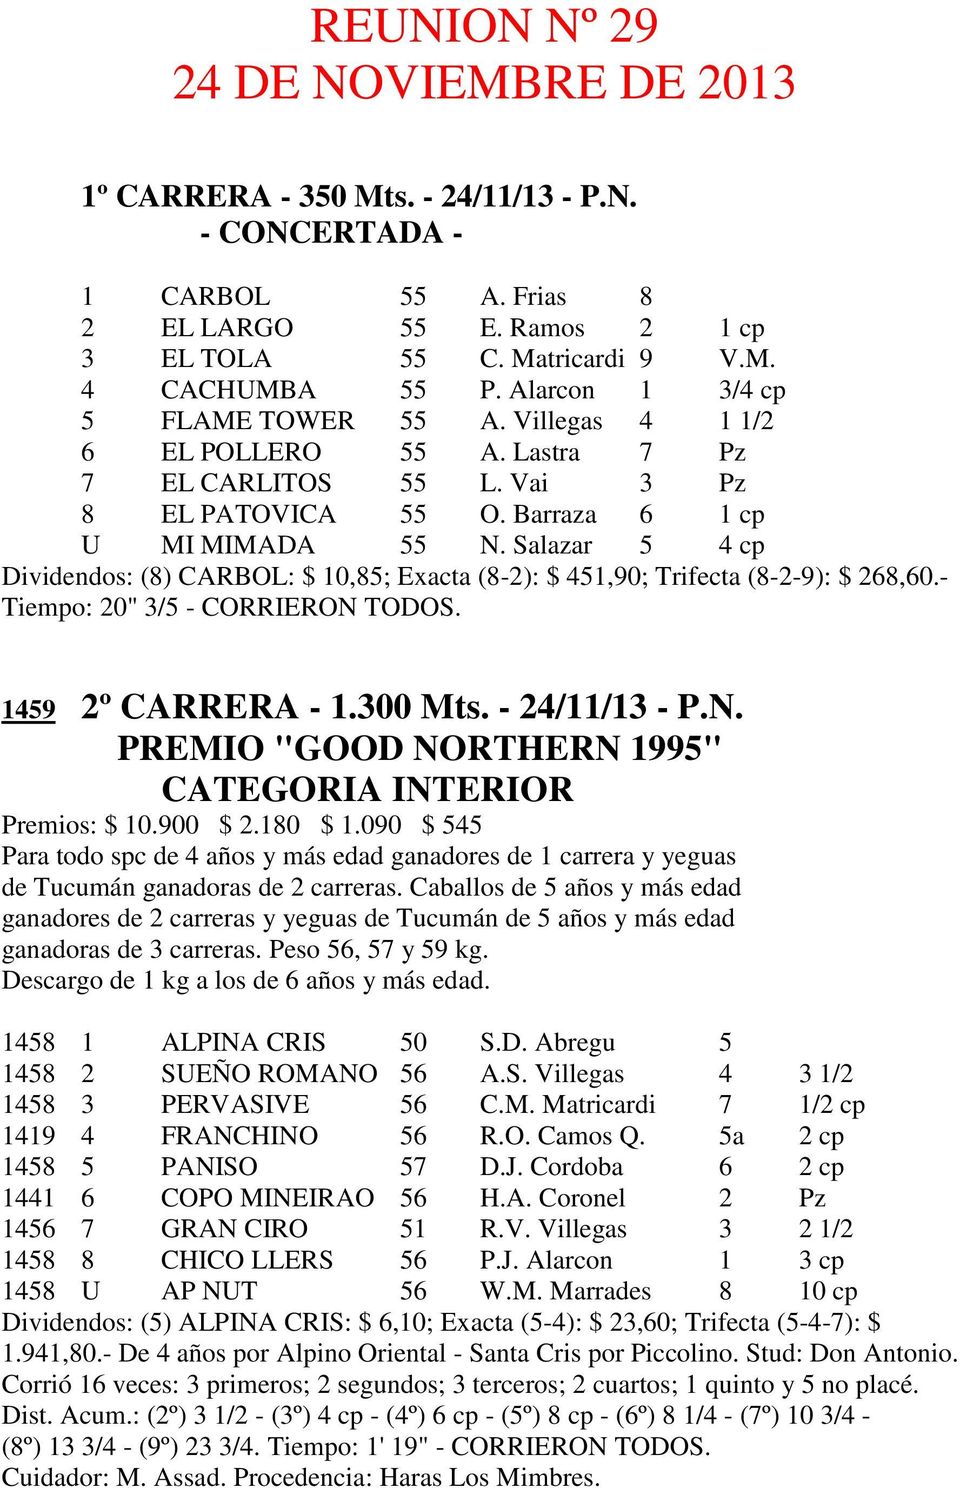 Salazar 5 4 cp Dividendos: (8) CARBOL: $ 10,85; Exacta (8-2): $ 451,90; Trifecta (8-2-9): $ 268,60.- Tiempo: 20" 3/5 - CORRIERON TODOS. 1459 2º CARRERA - 1.300 Mts. - 24/11/13 - P.N. PREMIO "GOOD NORTHERN 1995" Premios: $ 10.